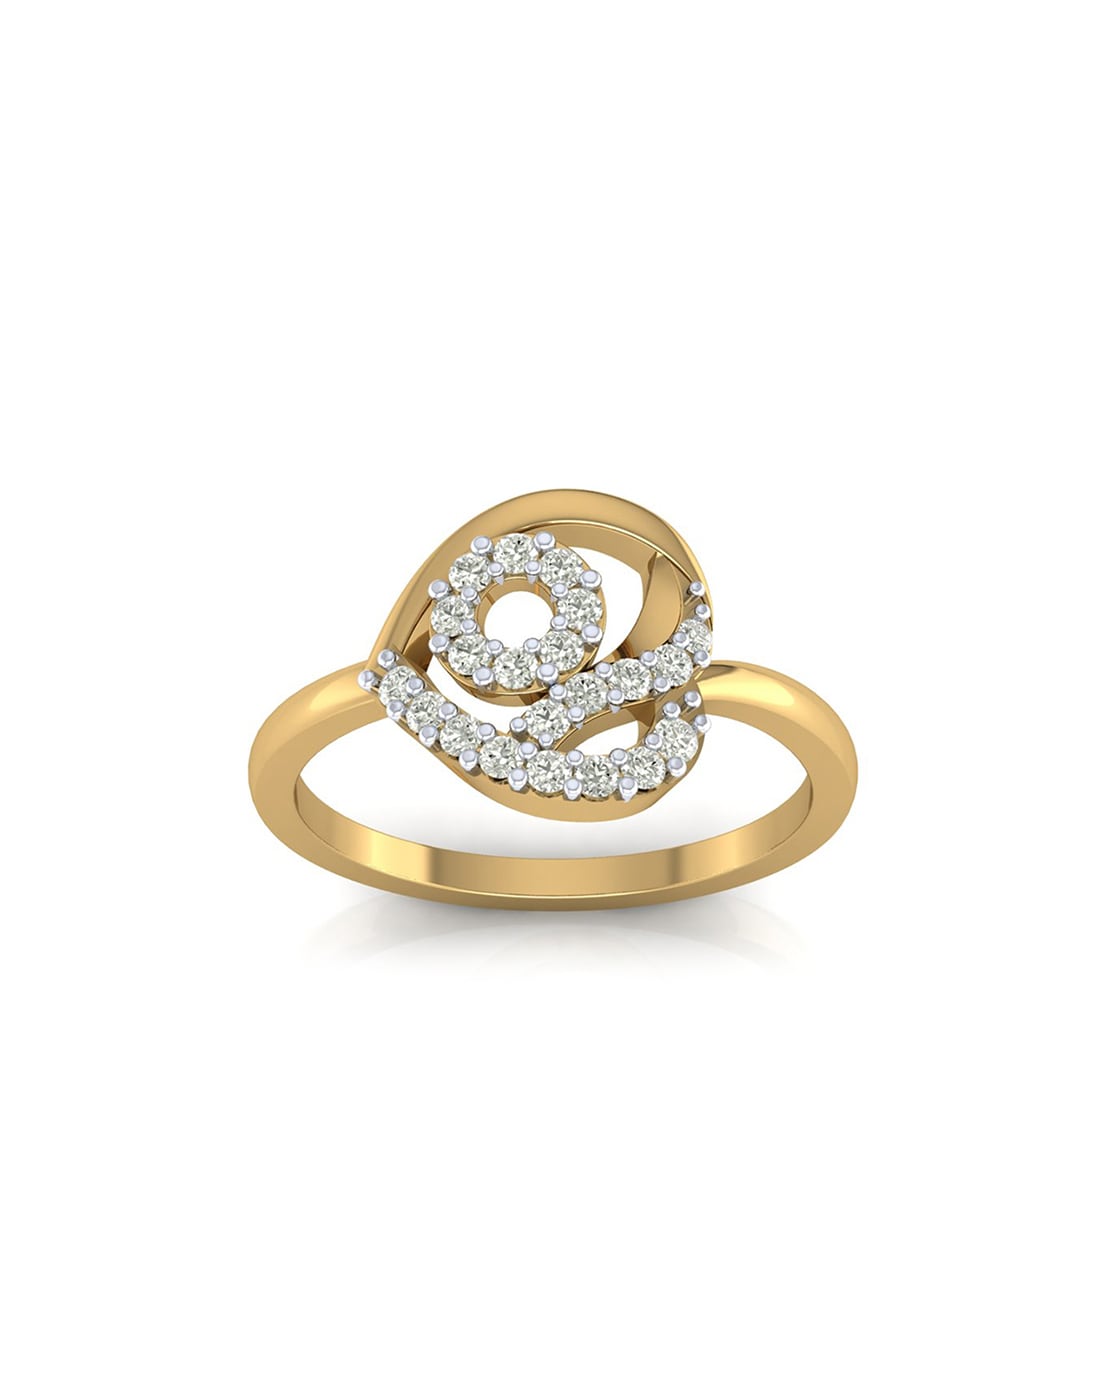 22K Gold Ring For Women - 235-GR6917 in 3.450 Grams